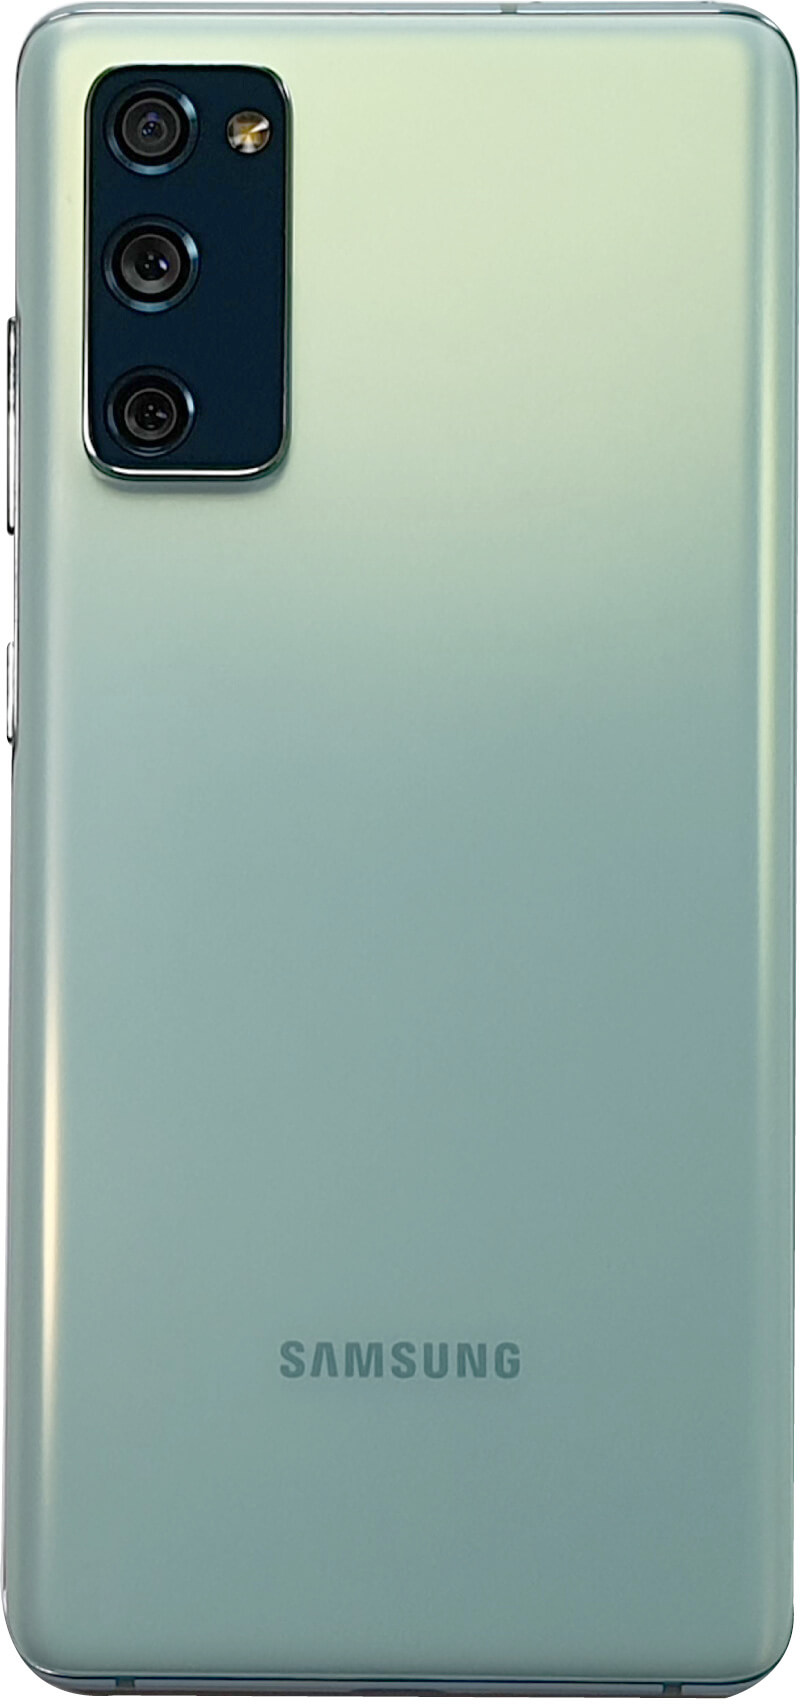 Review Samsung Galaxy S20 FE: Tremendo teléfono por el precio